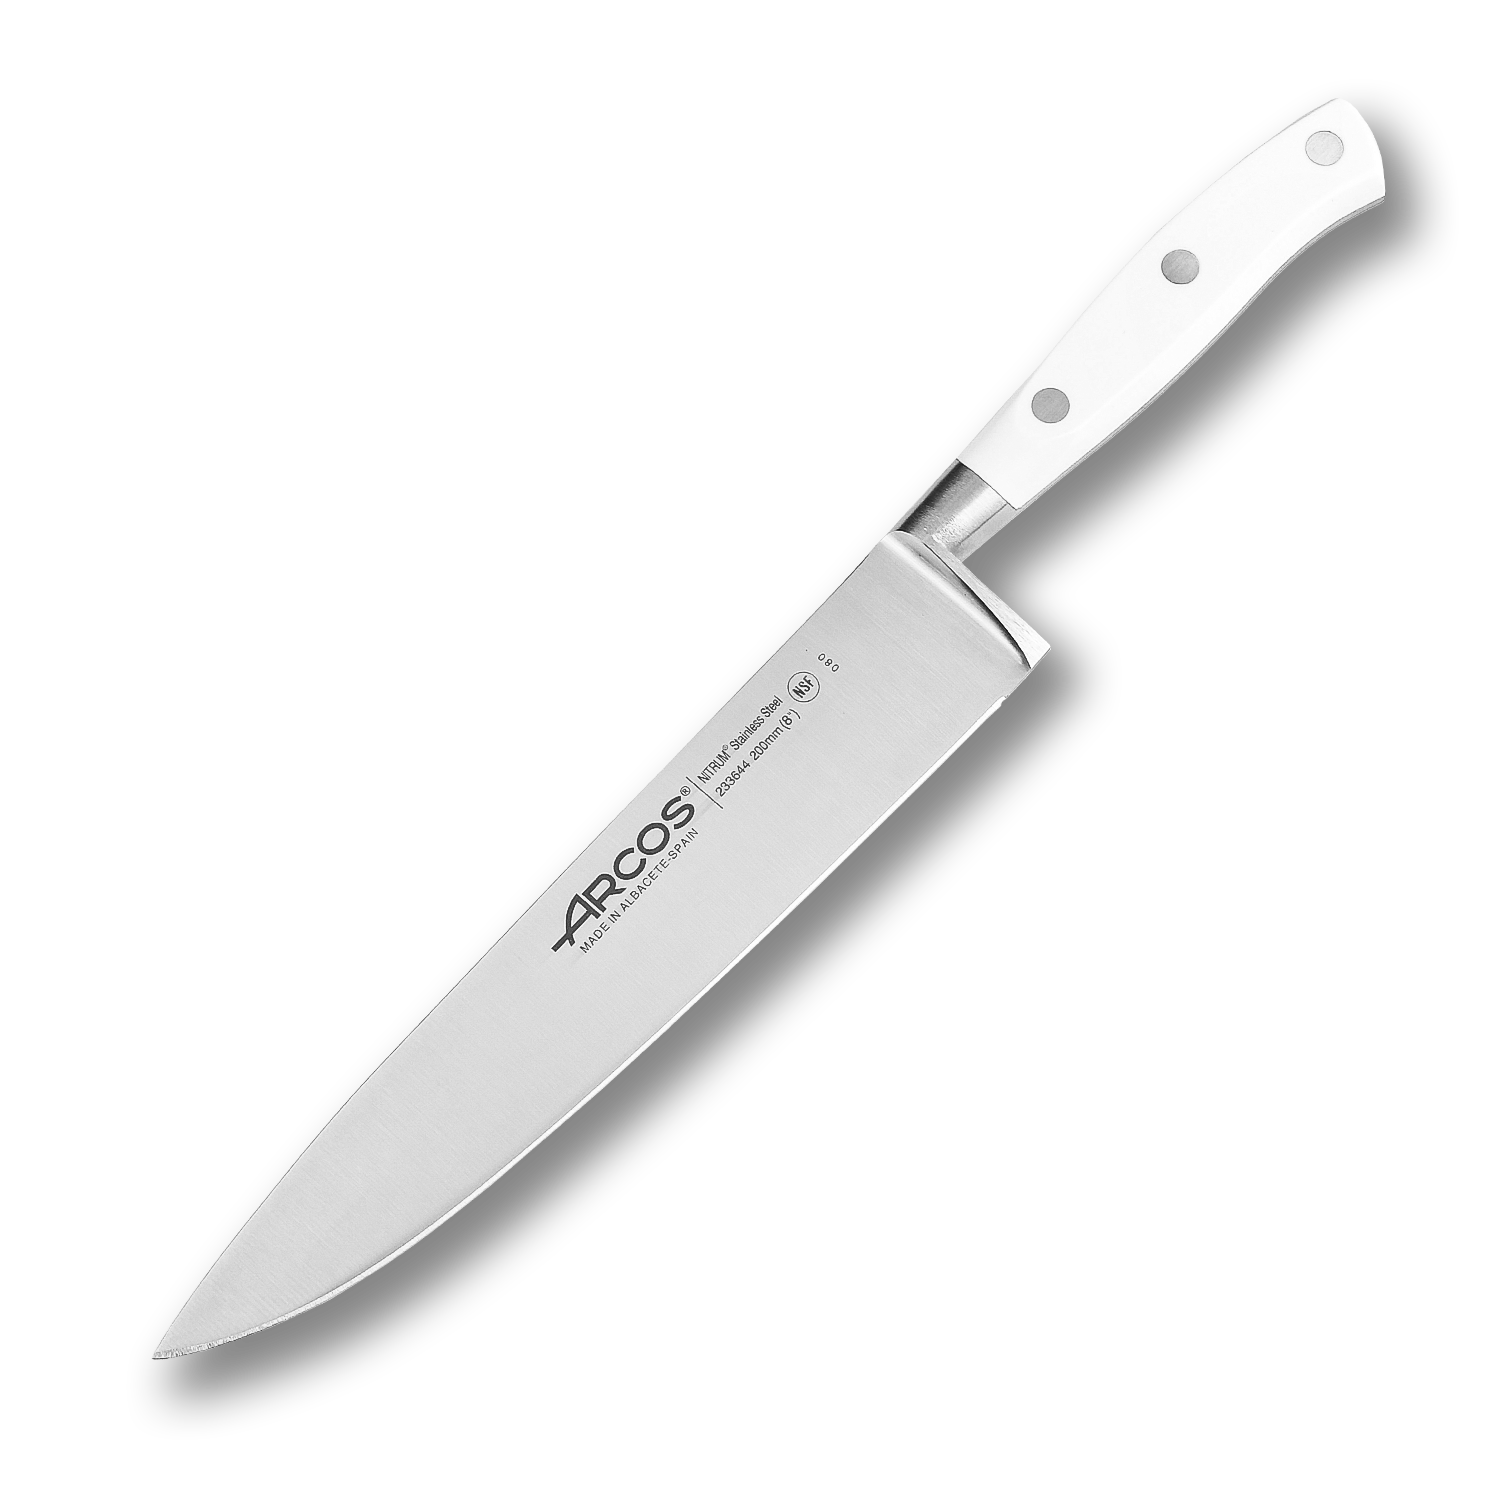 Поварской кухонный шеф-нож Arcos 20 см, кованая молибден-ванадиевая нержавеющая сталь X45CrMoV15, 233624